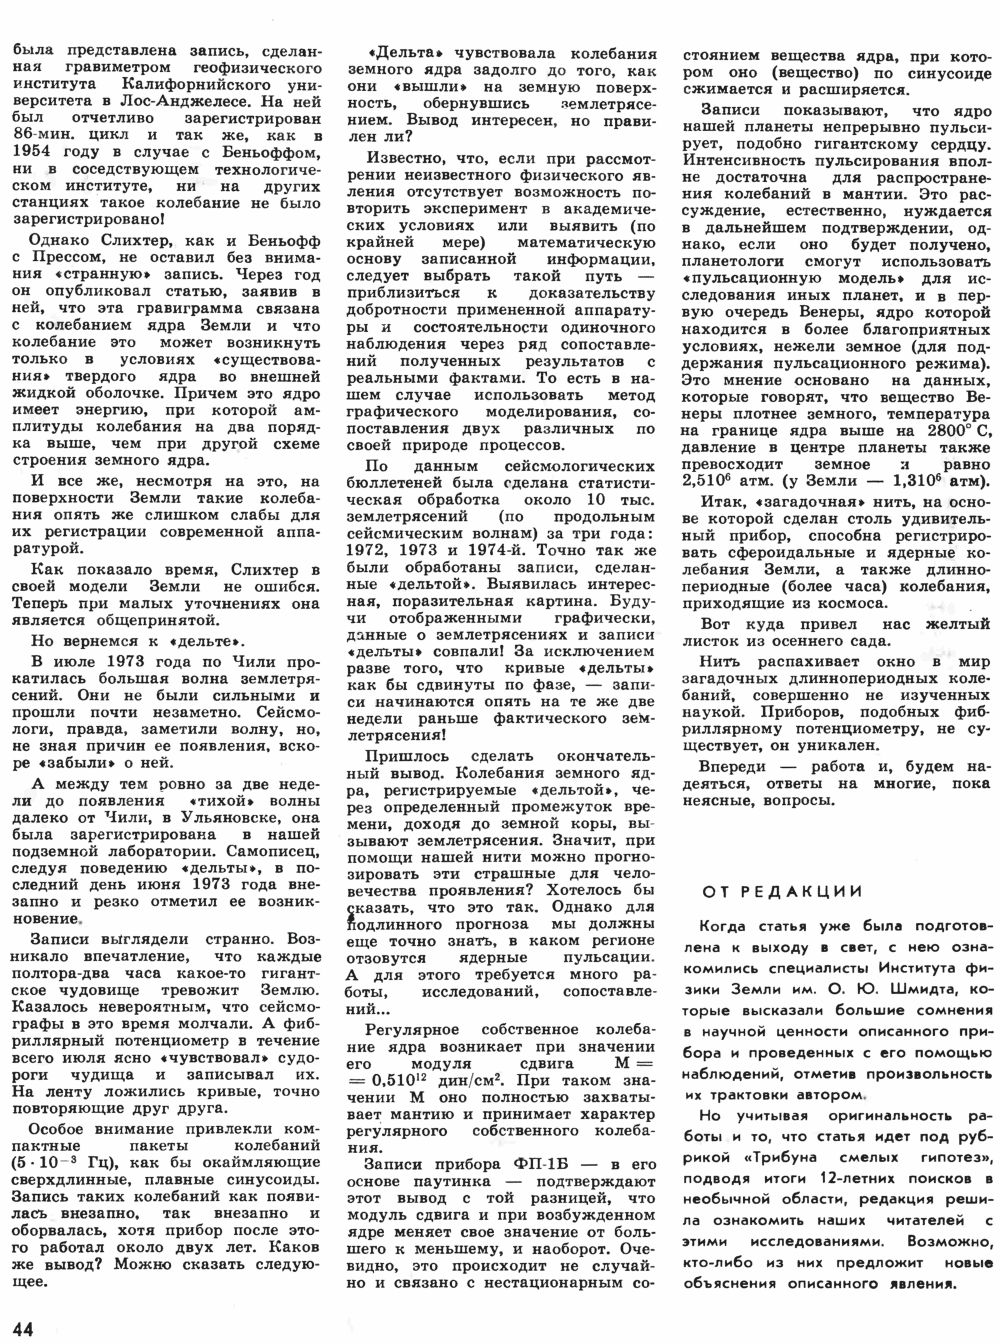 «Дельта» — паучья нить. В. Беляев. Техника — Молодёжи, 1980, №9, с.42-44. Фотокопия №3